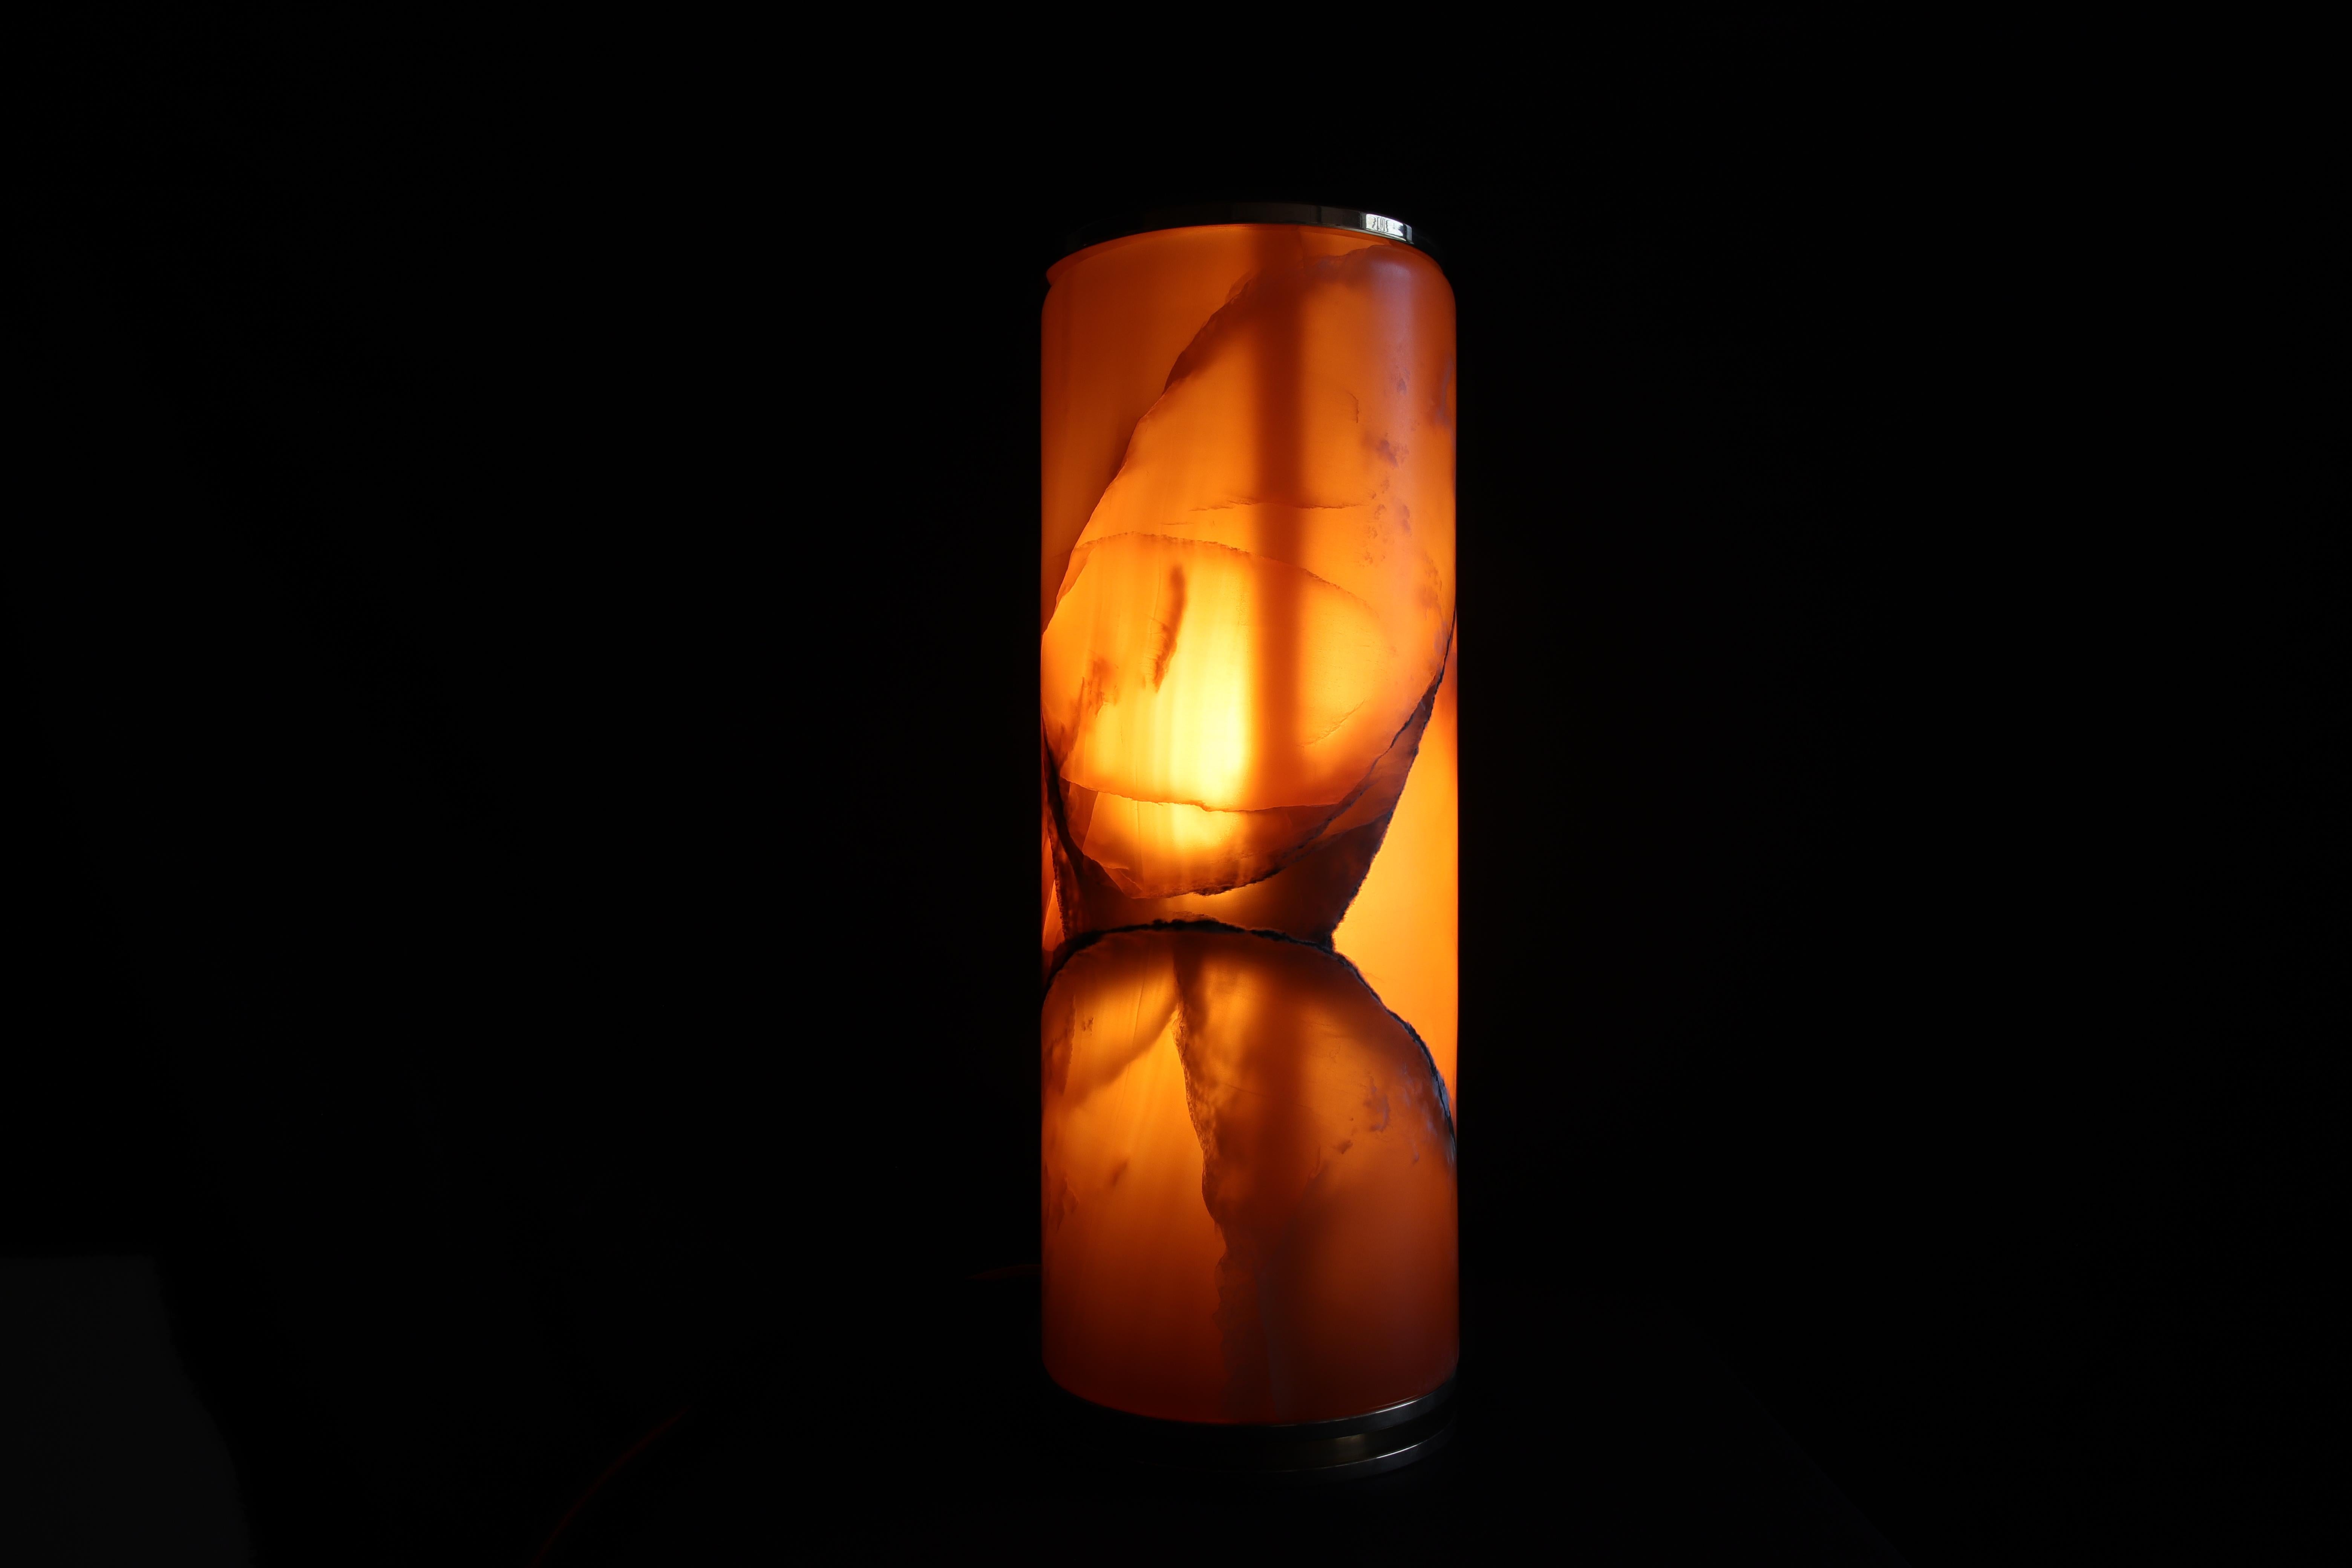 La lampada Superba è realizzata in onice ambra, bronzo ed ottone. Essenziale nel design per esaltare la rara bellezza di questa pietra naturale semitrasparente. Il fondo è di un colore ambra caldo, ed è attraversata da nuvolature più chiare che con